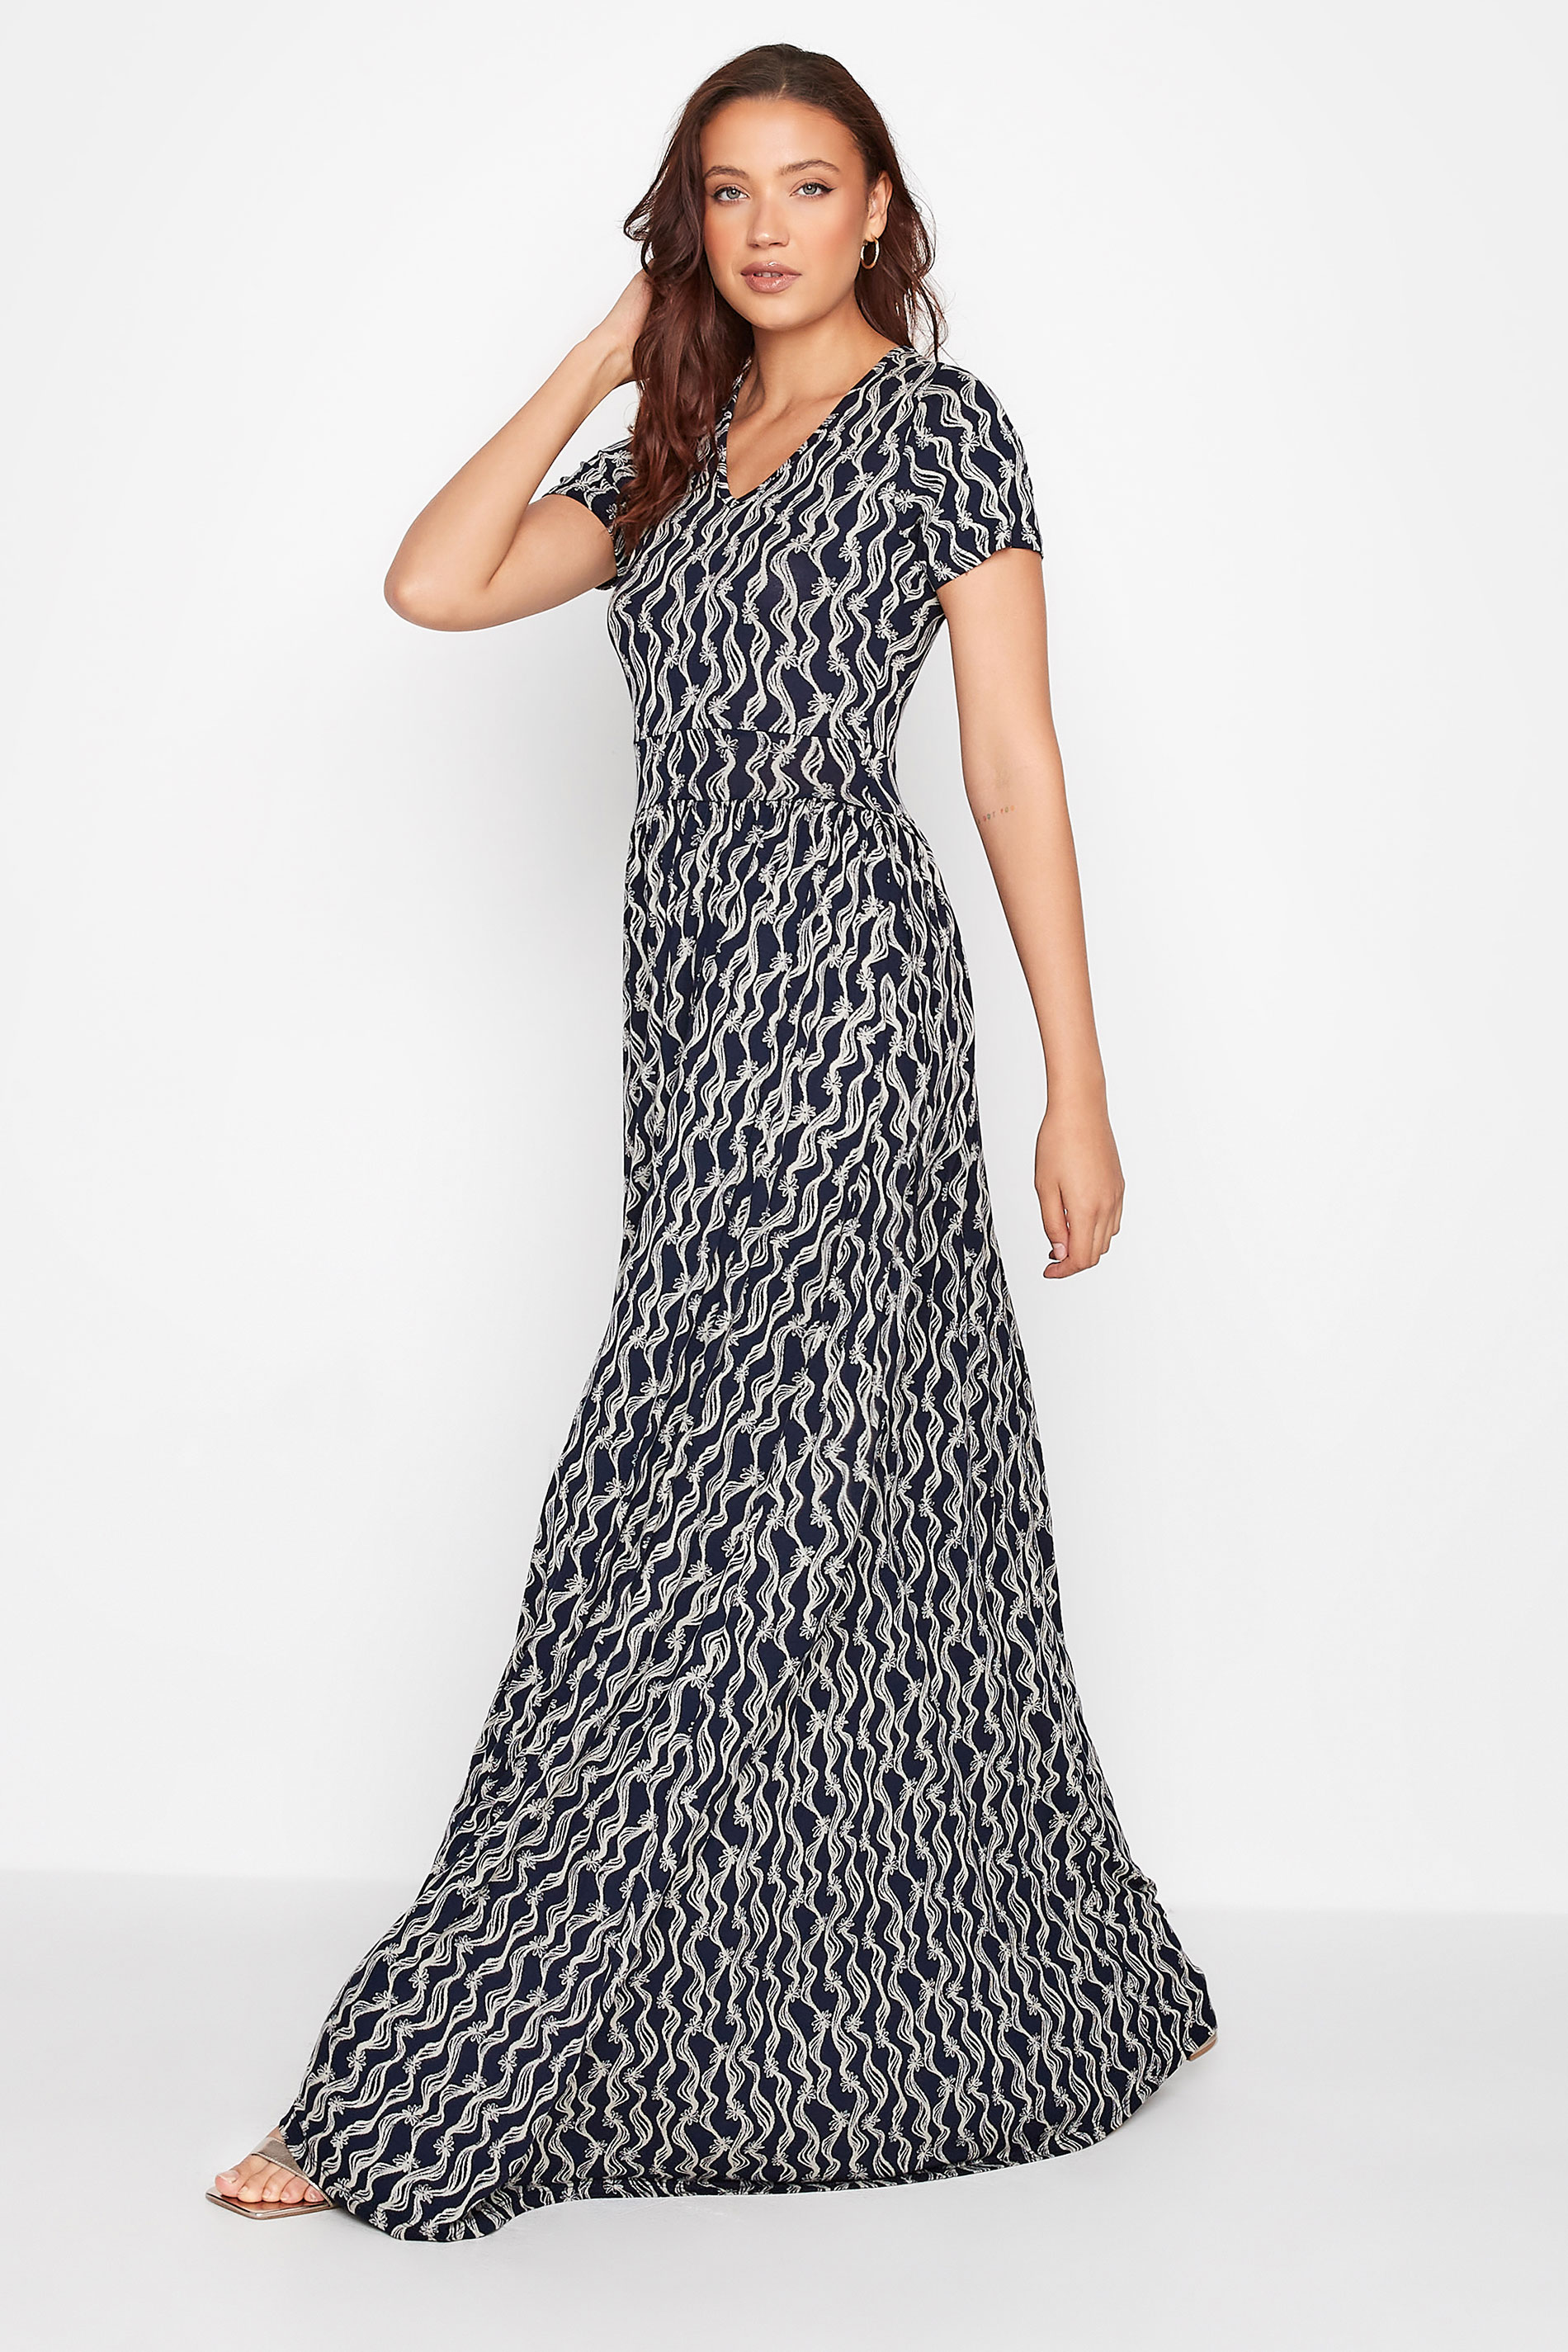 LTS Tall Women's Navy Blue Swirl Floral Maxi Dress | Long Tall Sally 1